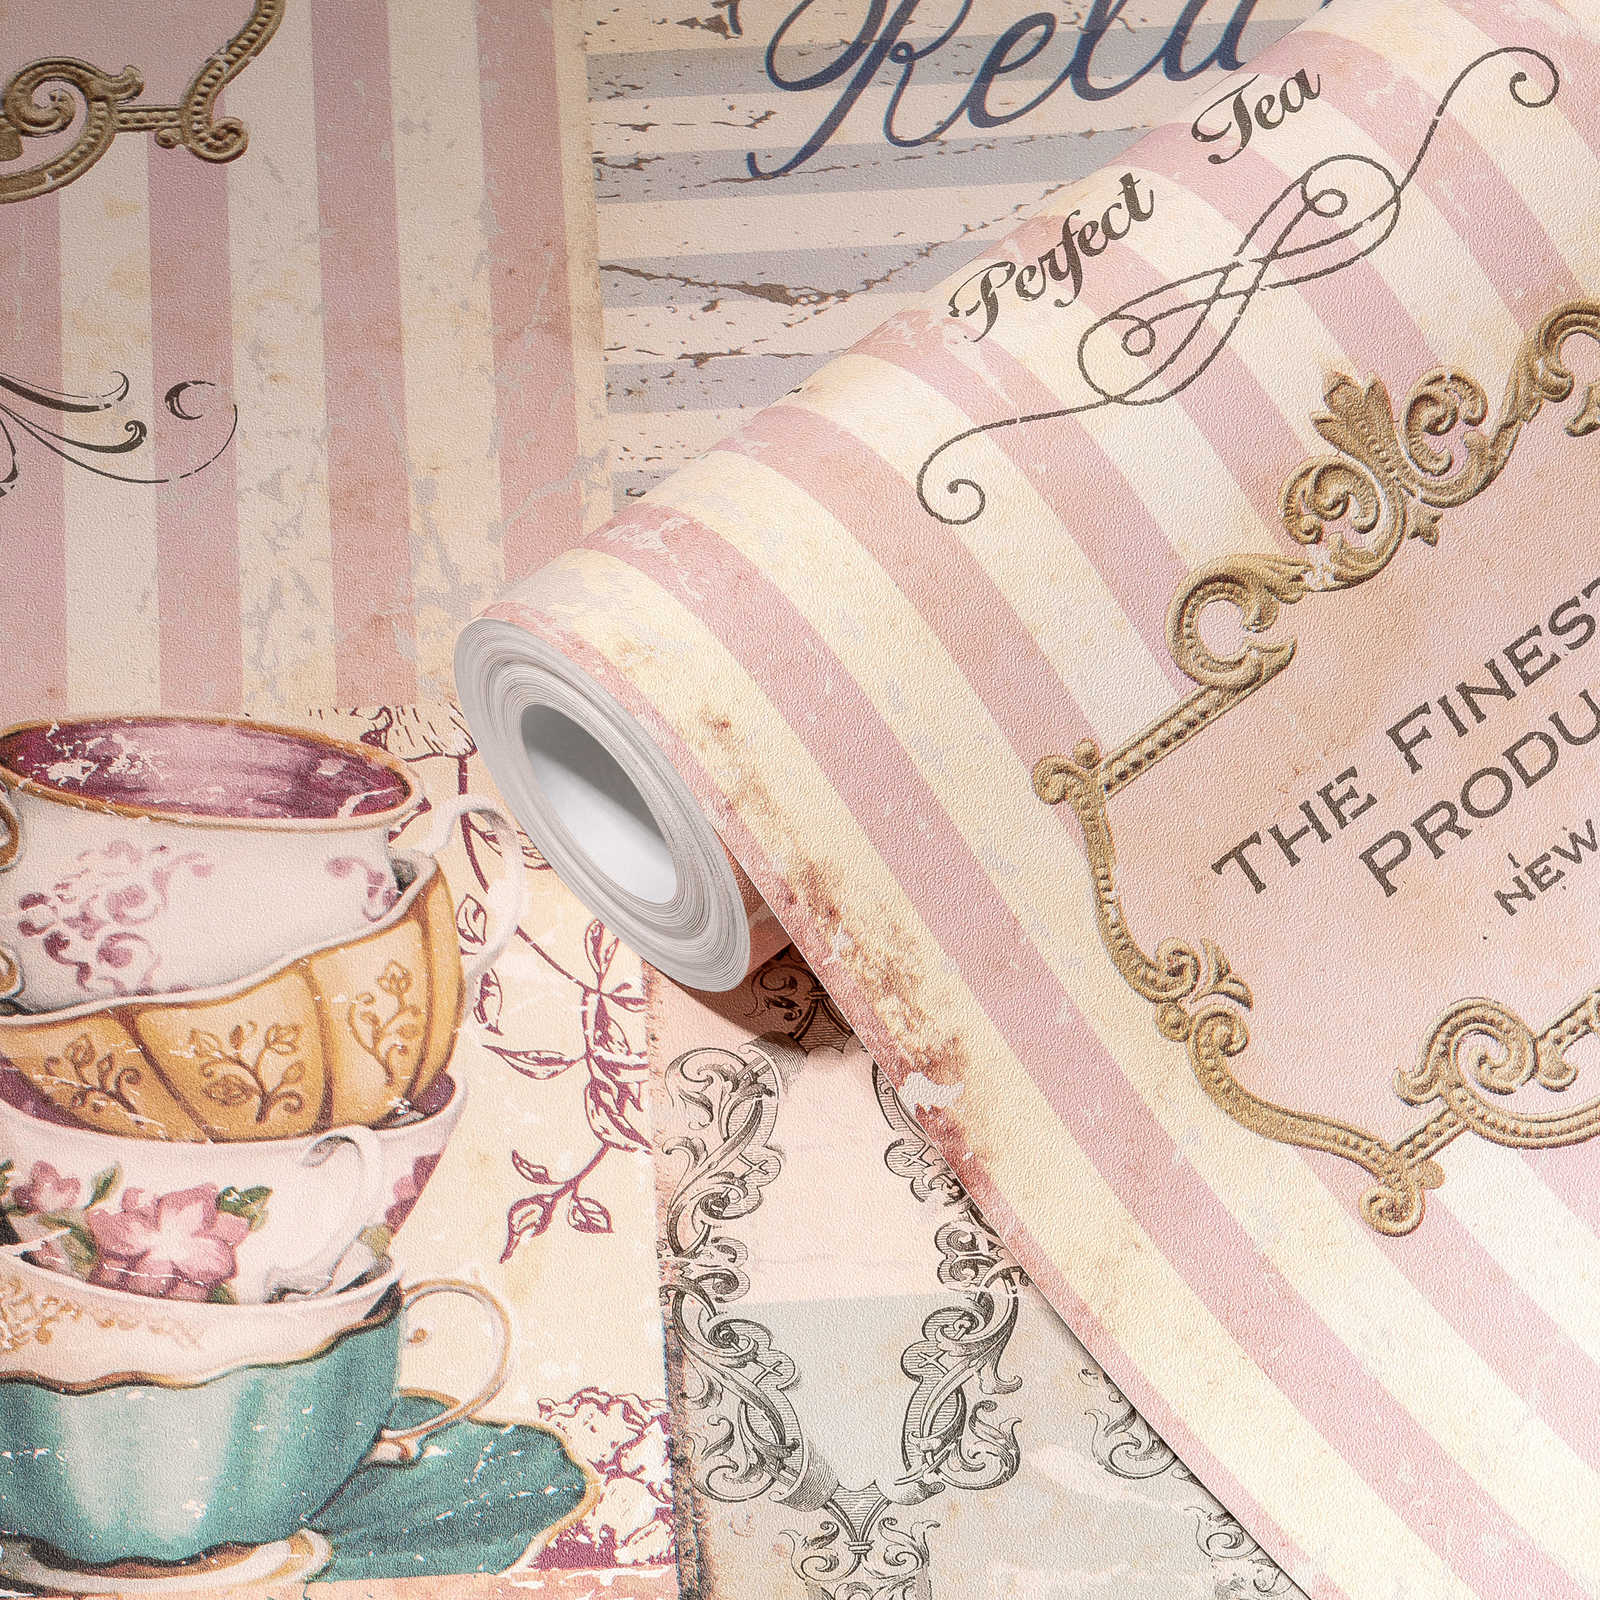             Keuken behang Tea Time collage in landelijke stijl - roze, grijs, blauw
        